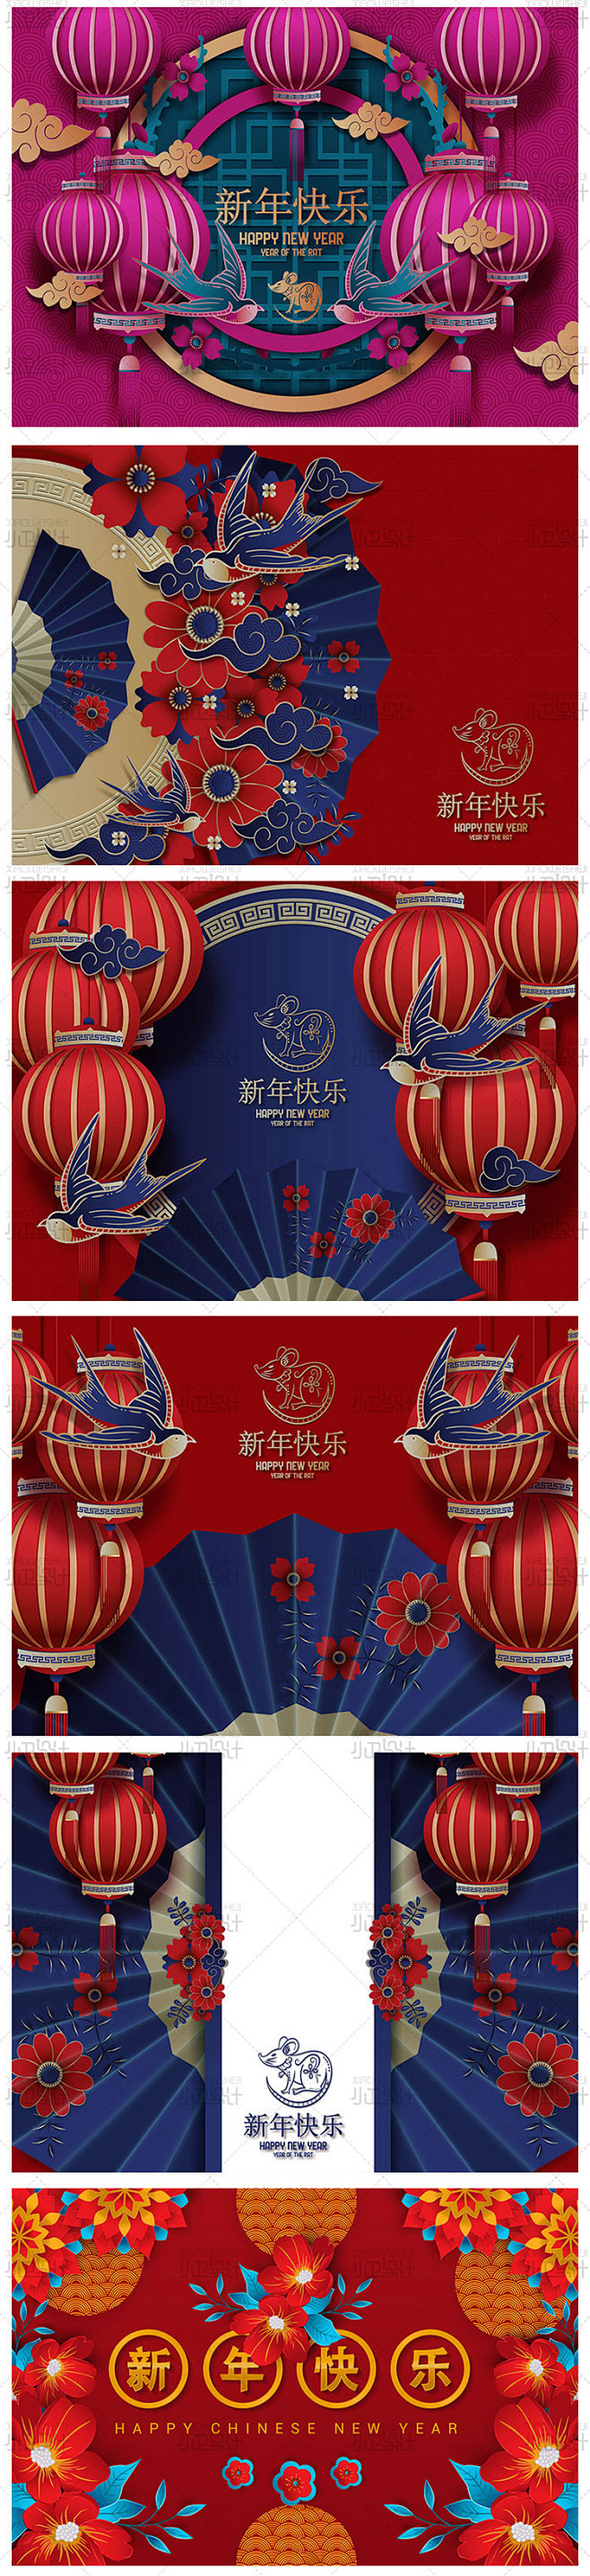 中国传统新年春节2020鼠年横幅bann...